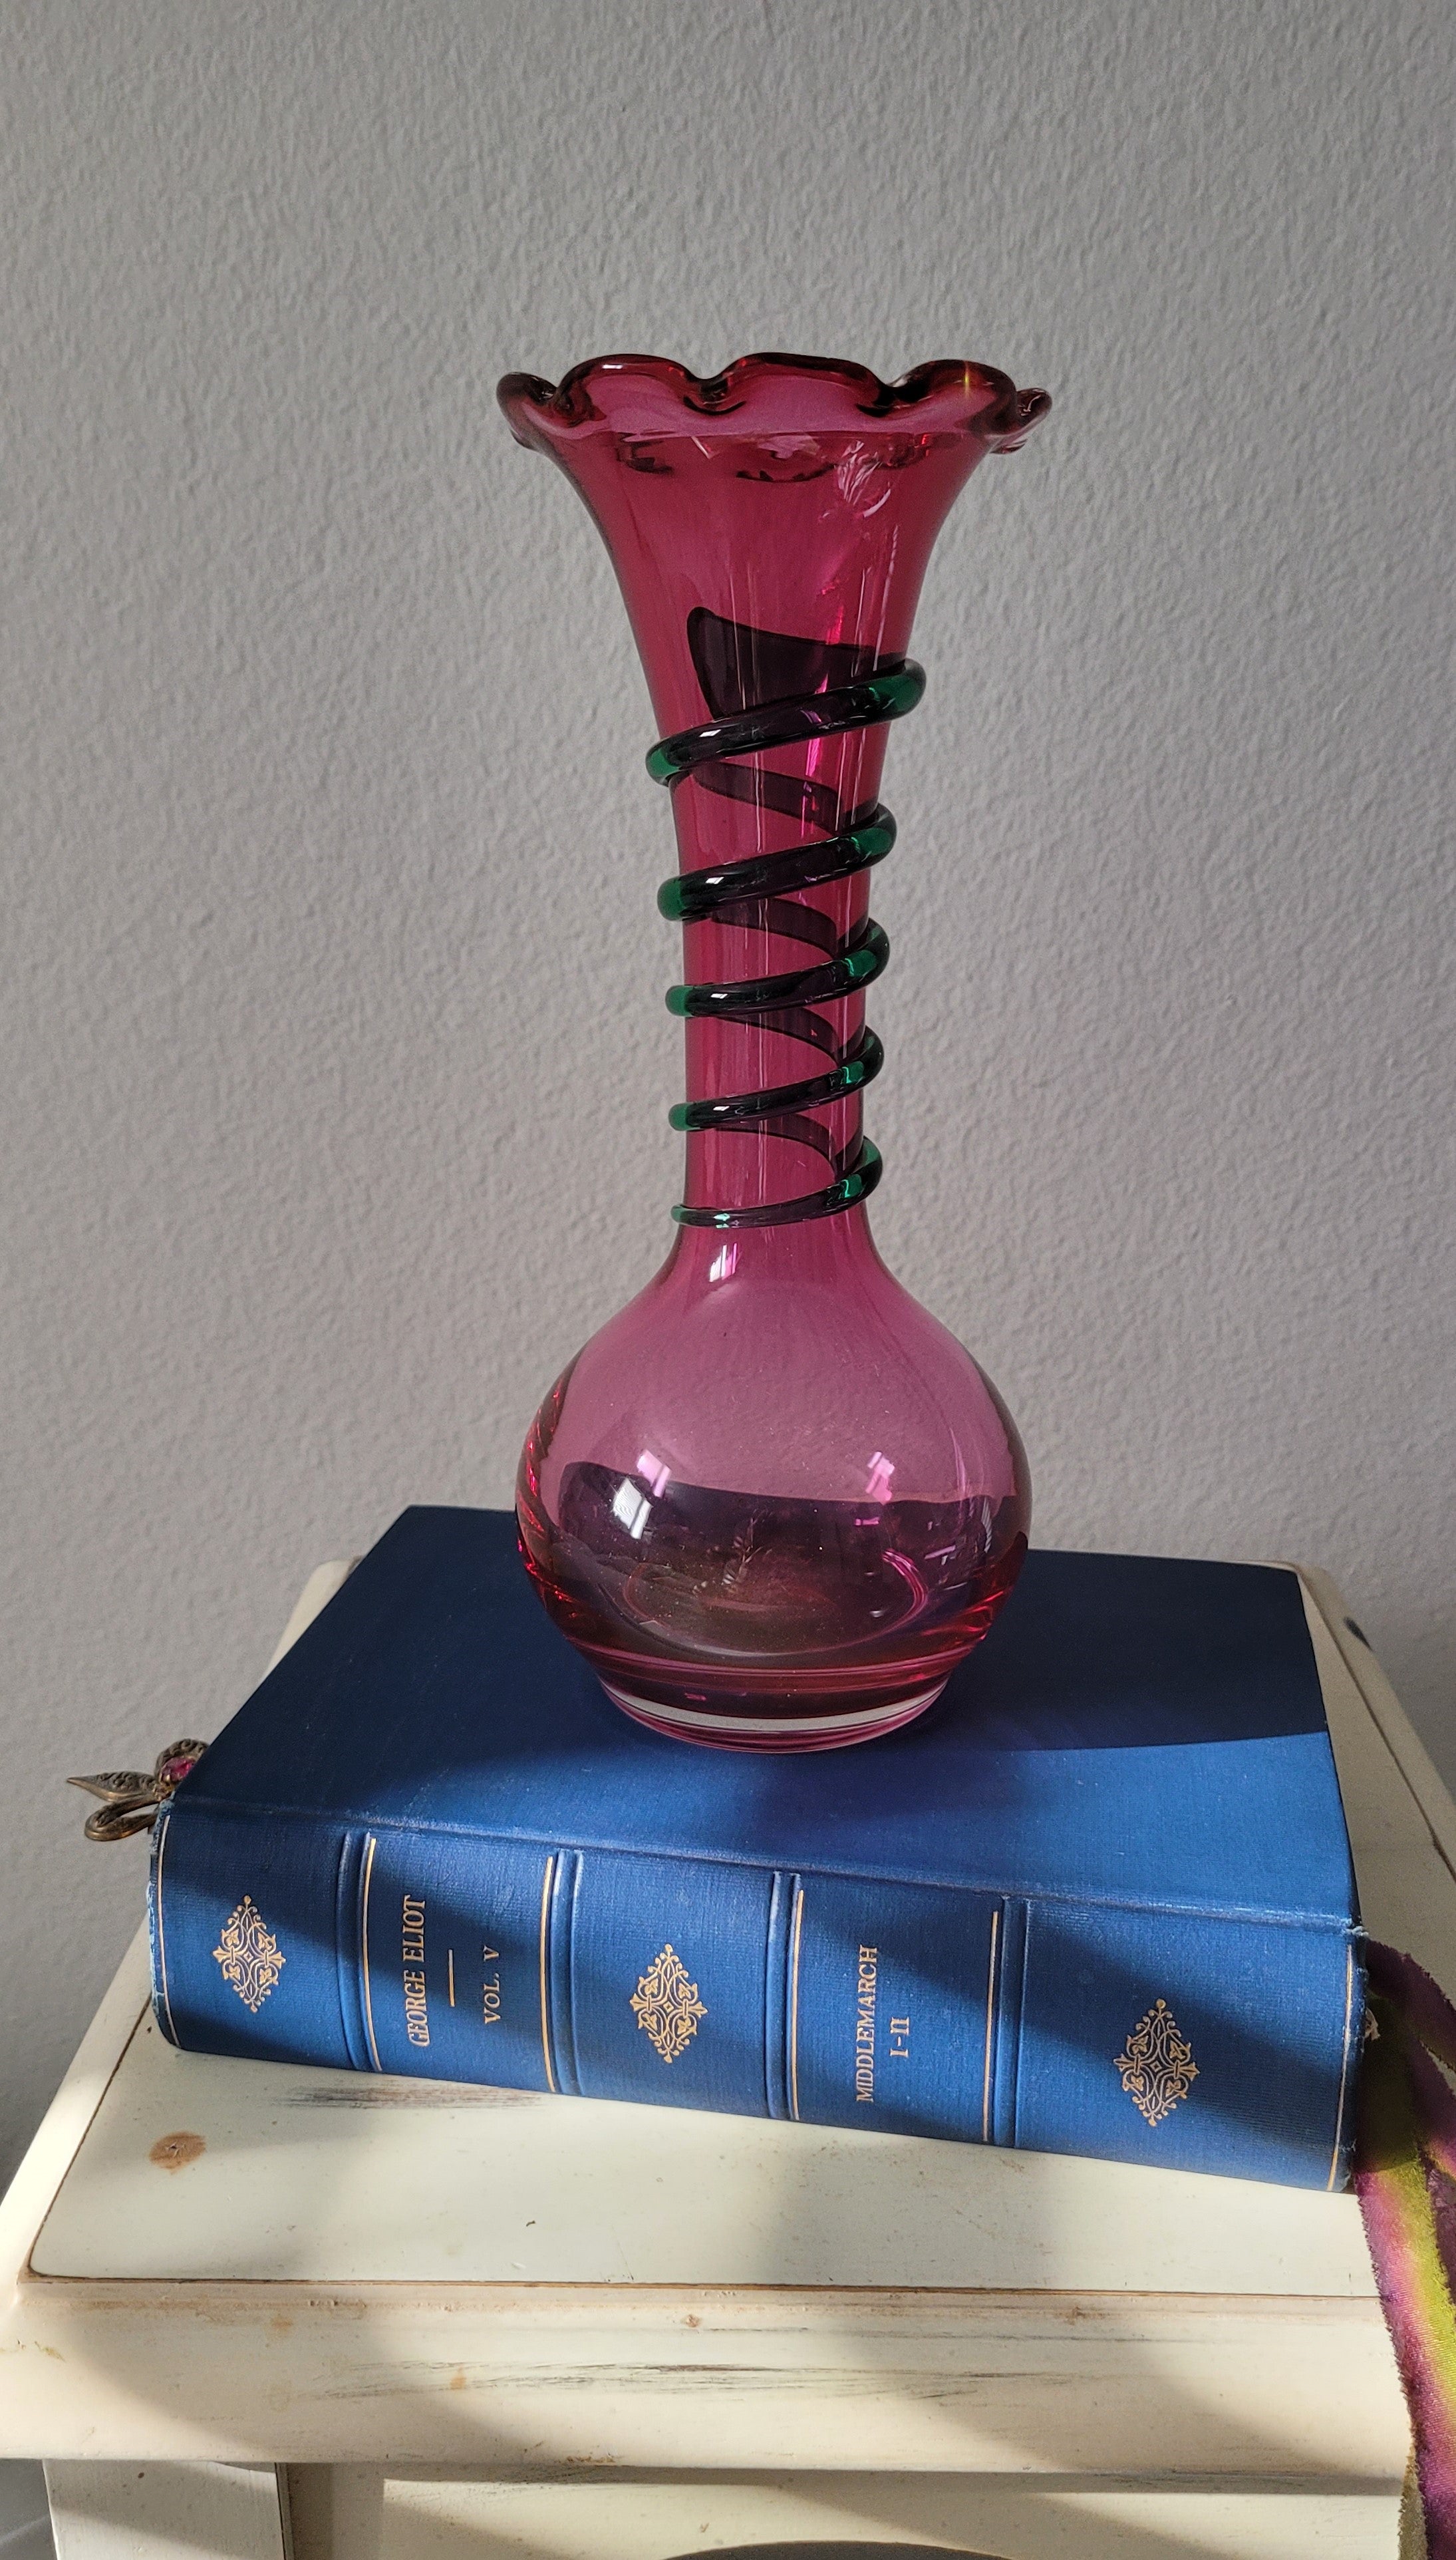 Kralik Handmade Glass Vase